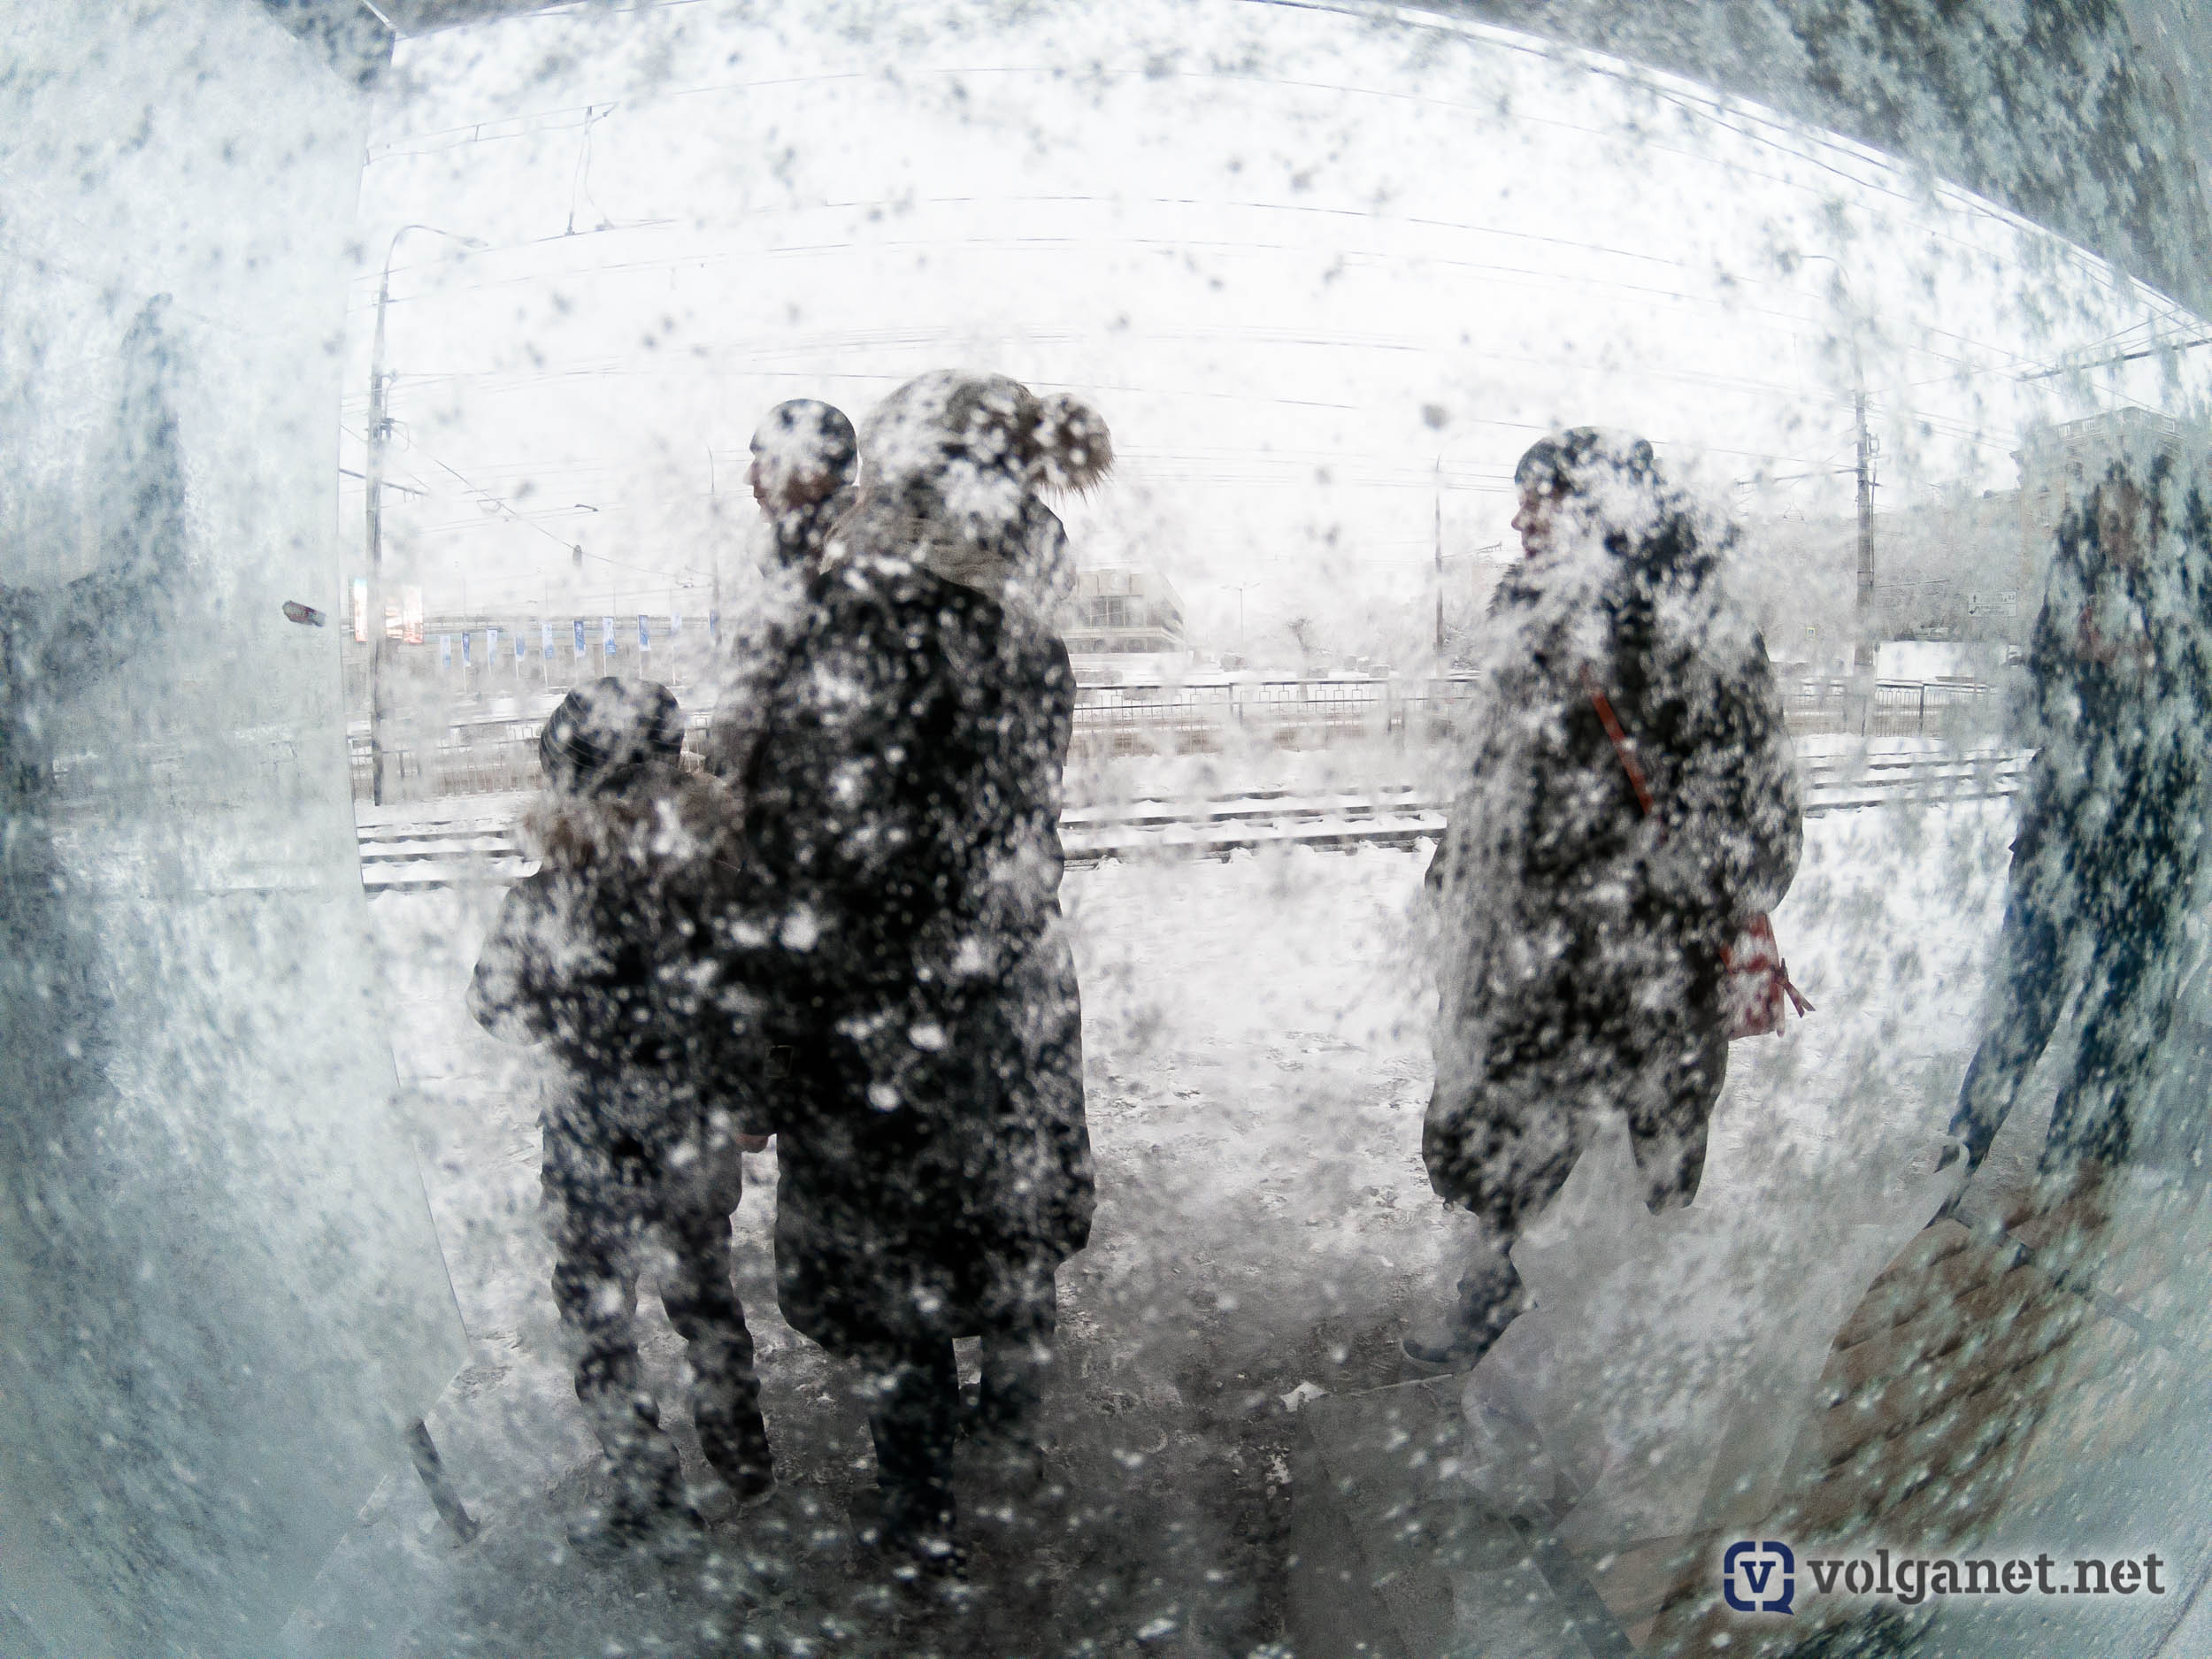 Первый снегопад. Волгоградские жители зимой. Снегопад это явление. Снег идет при плюсовой температуре. Что то страшное пришло со снегом название